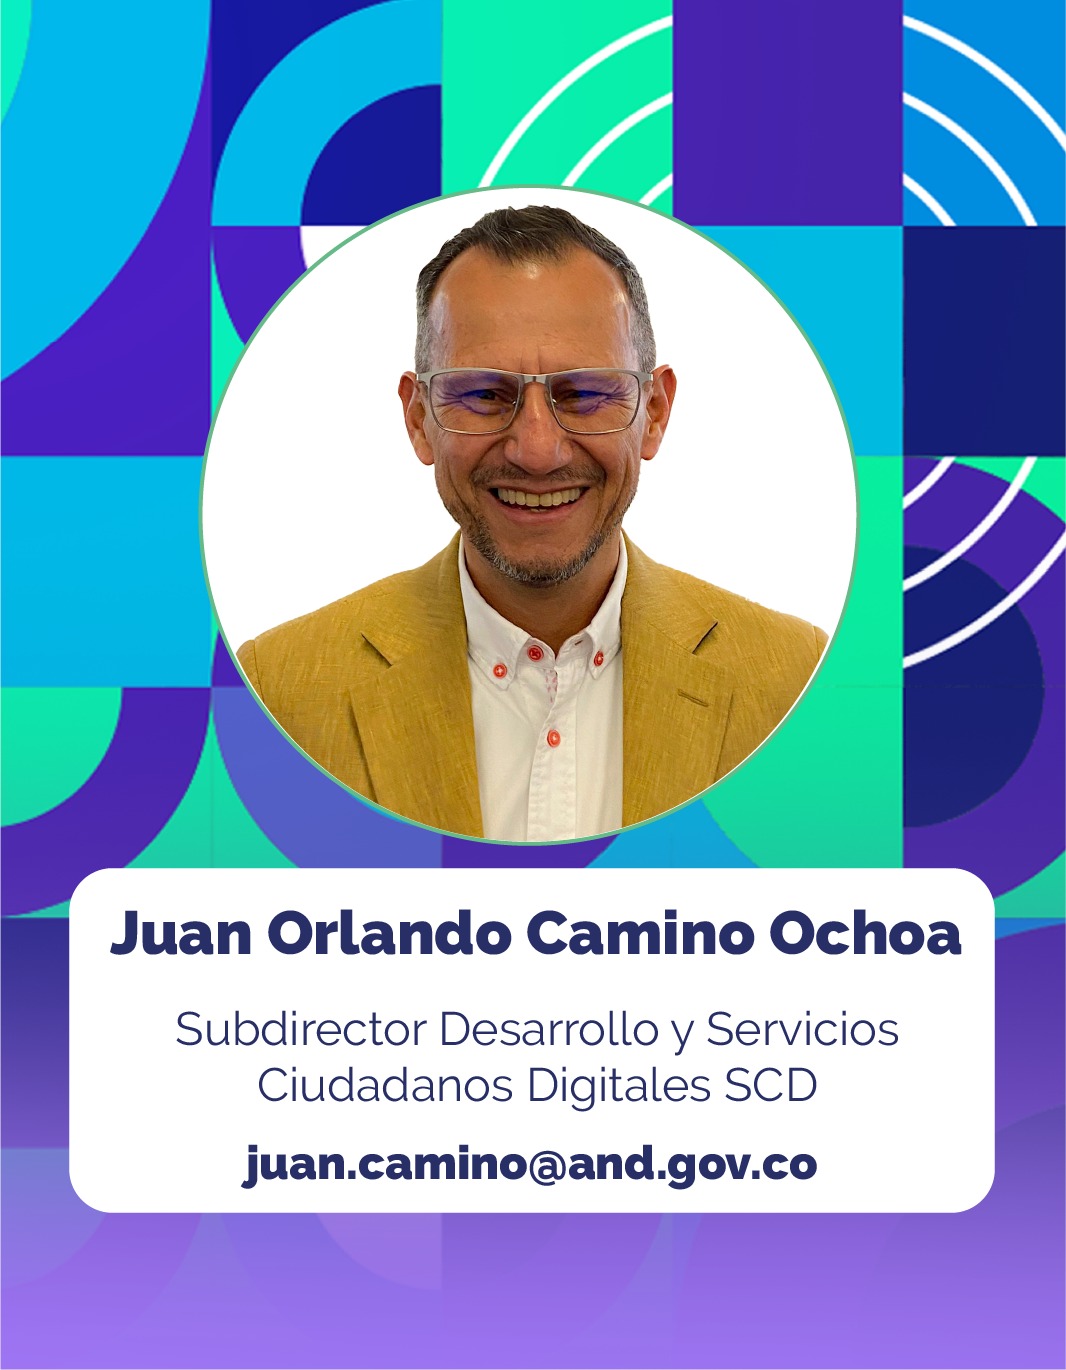 Juan Orlando Camino Ochoa Subdirector de Desarrollo y Servicios Ciudadanos Digitales SCD de la Corporación Agencia Nacional de Gobierno Digital - AND.